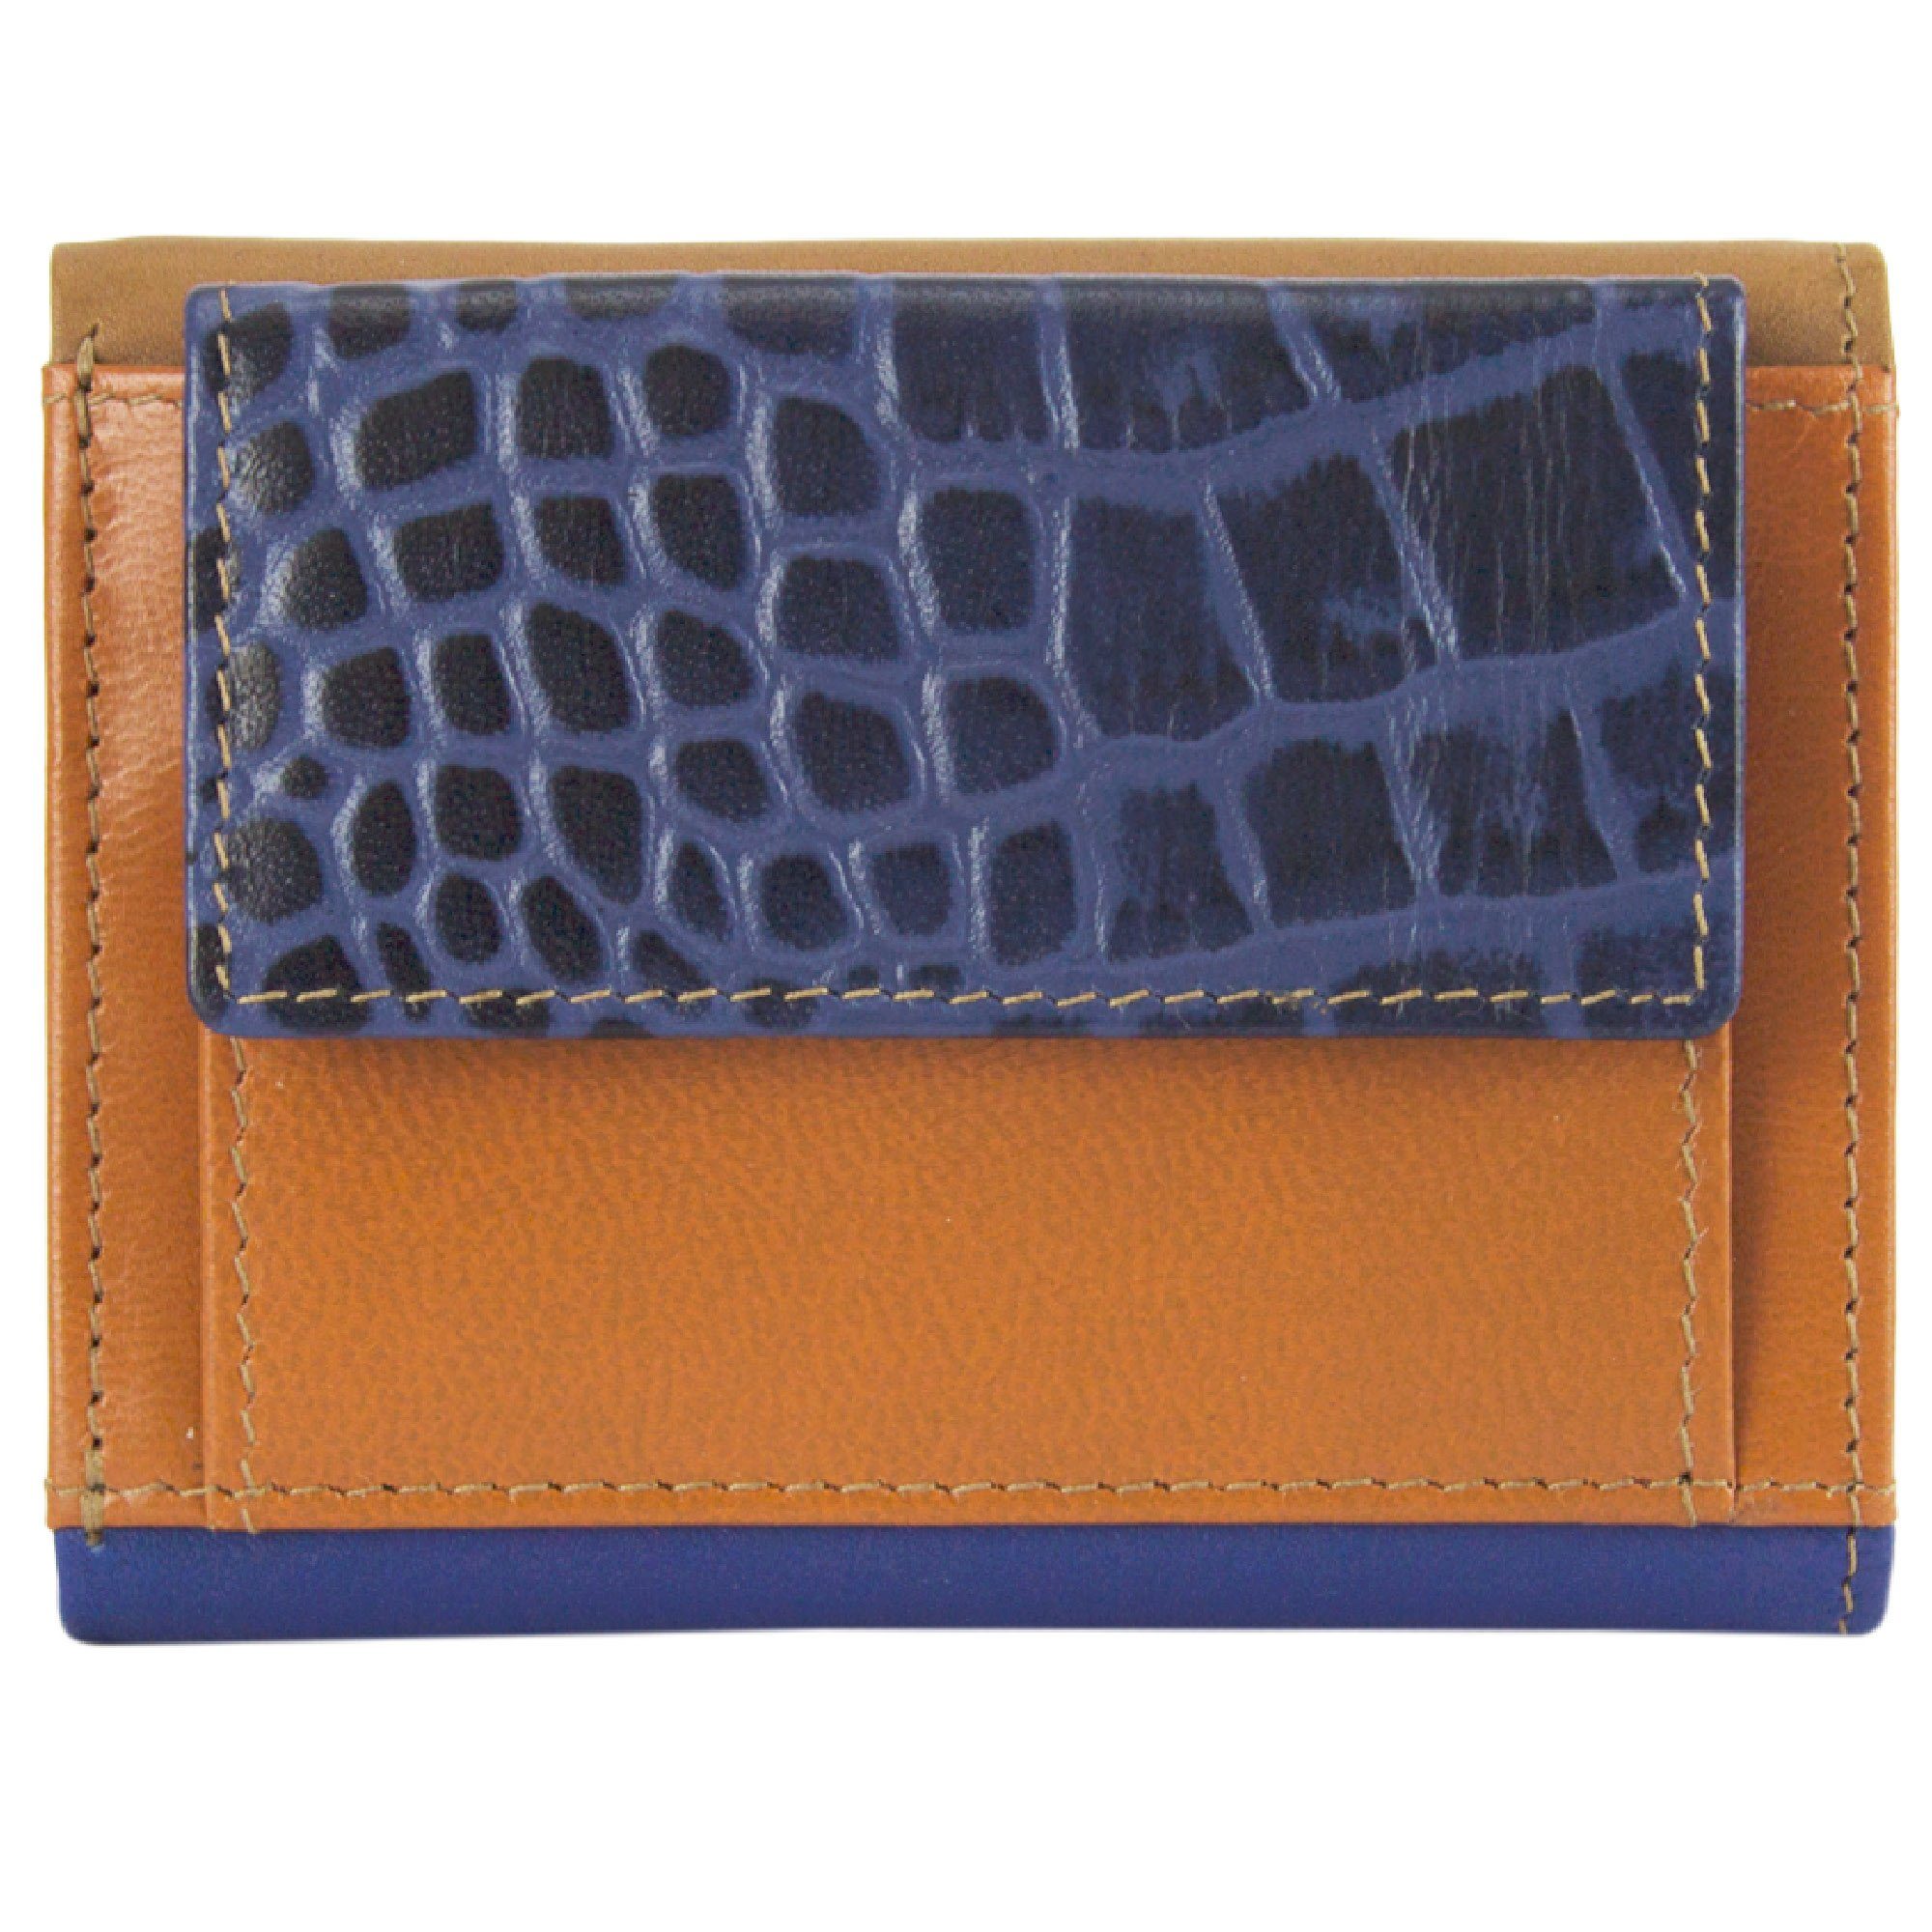 Sunsa Mini Geldbörse Mini klein Leder Geldbörse Geldbeutel Portemonnaie Brieftasche, echt Leder, aus recycelten Lederresten, mit RFID-Schutz, Unisex blau/braun